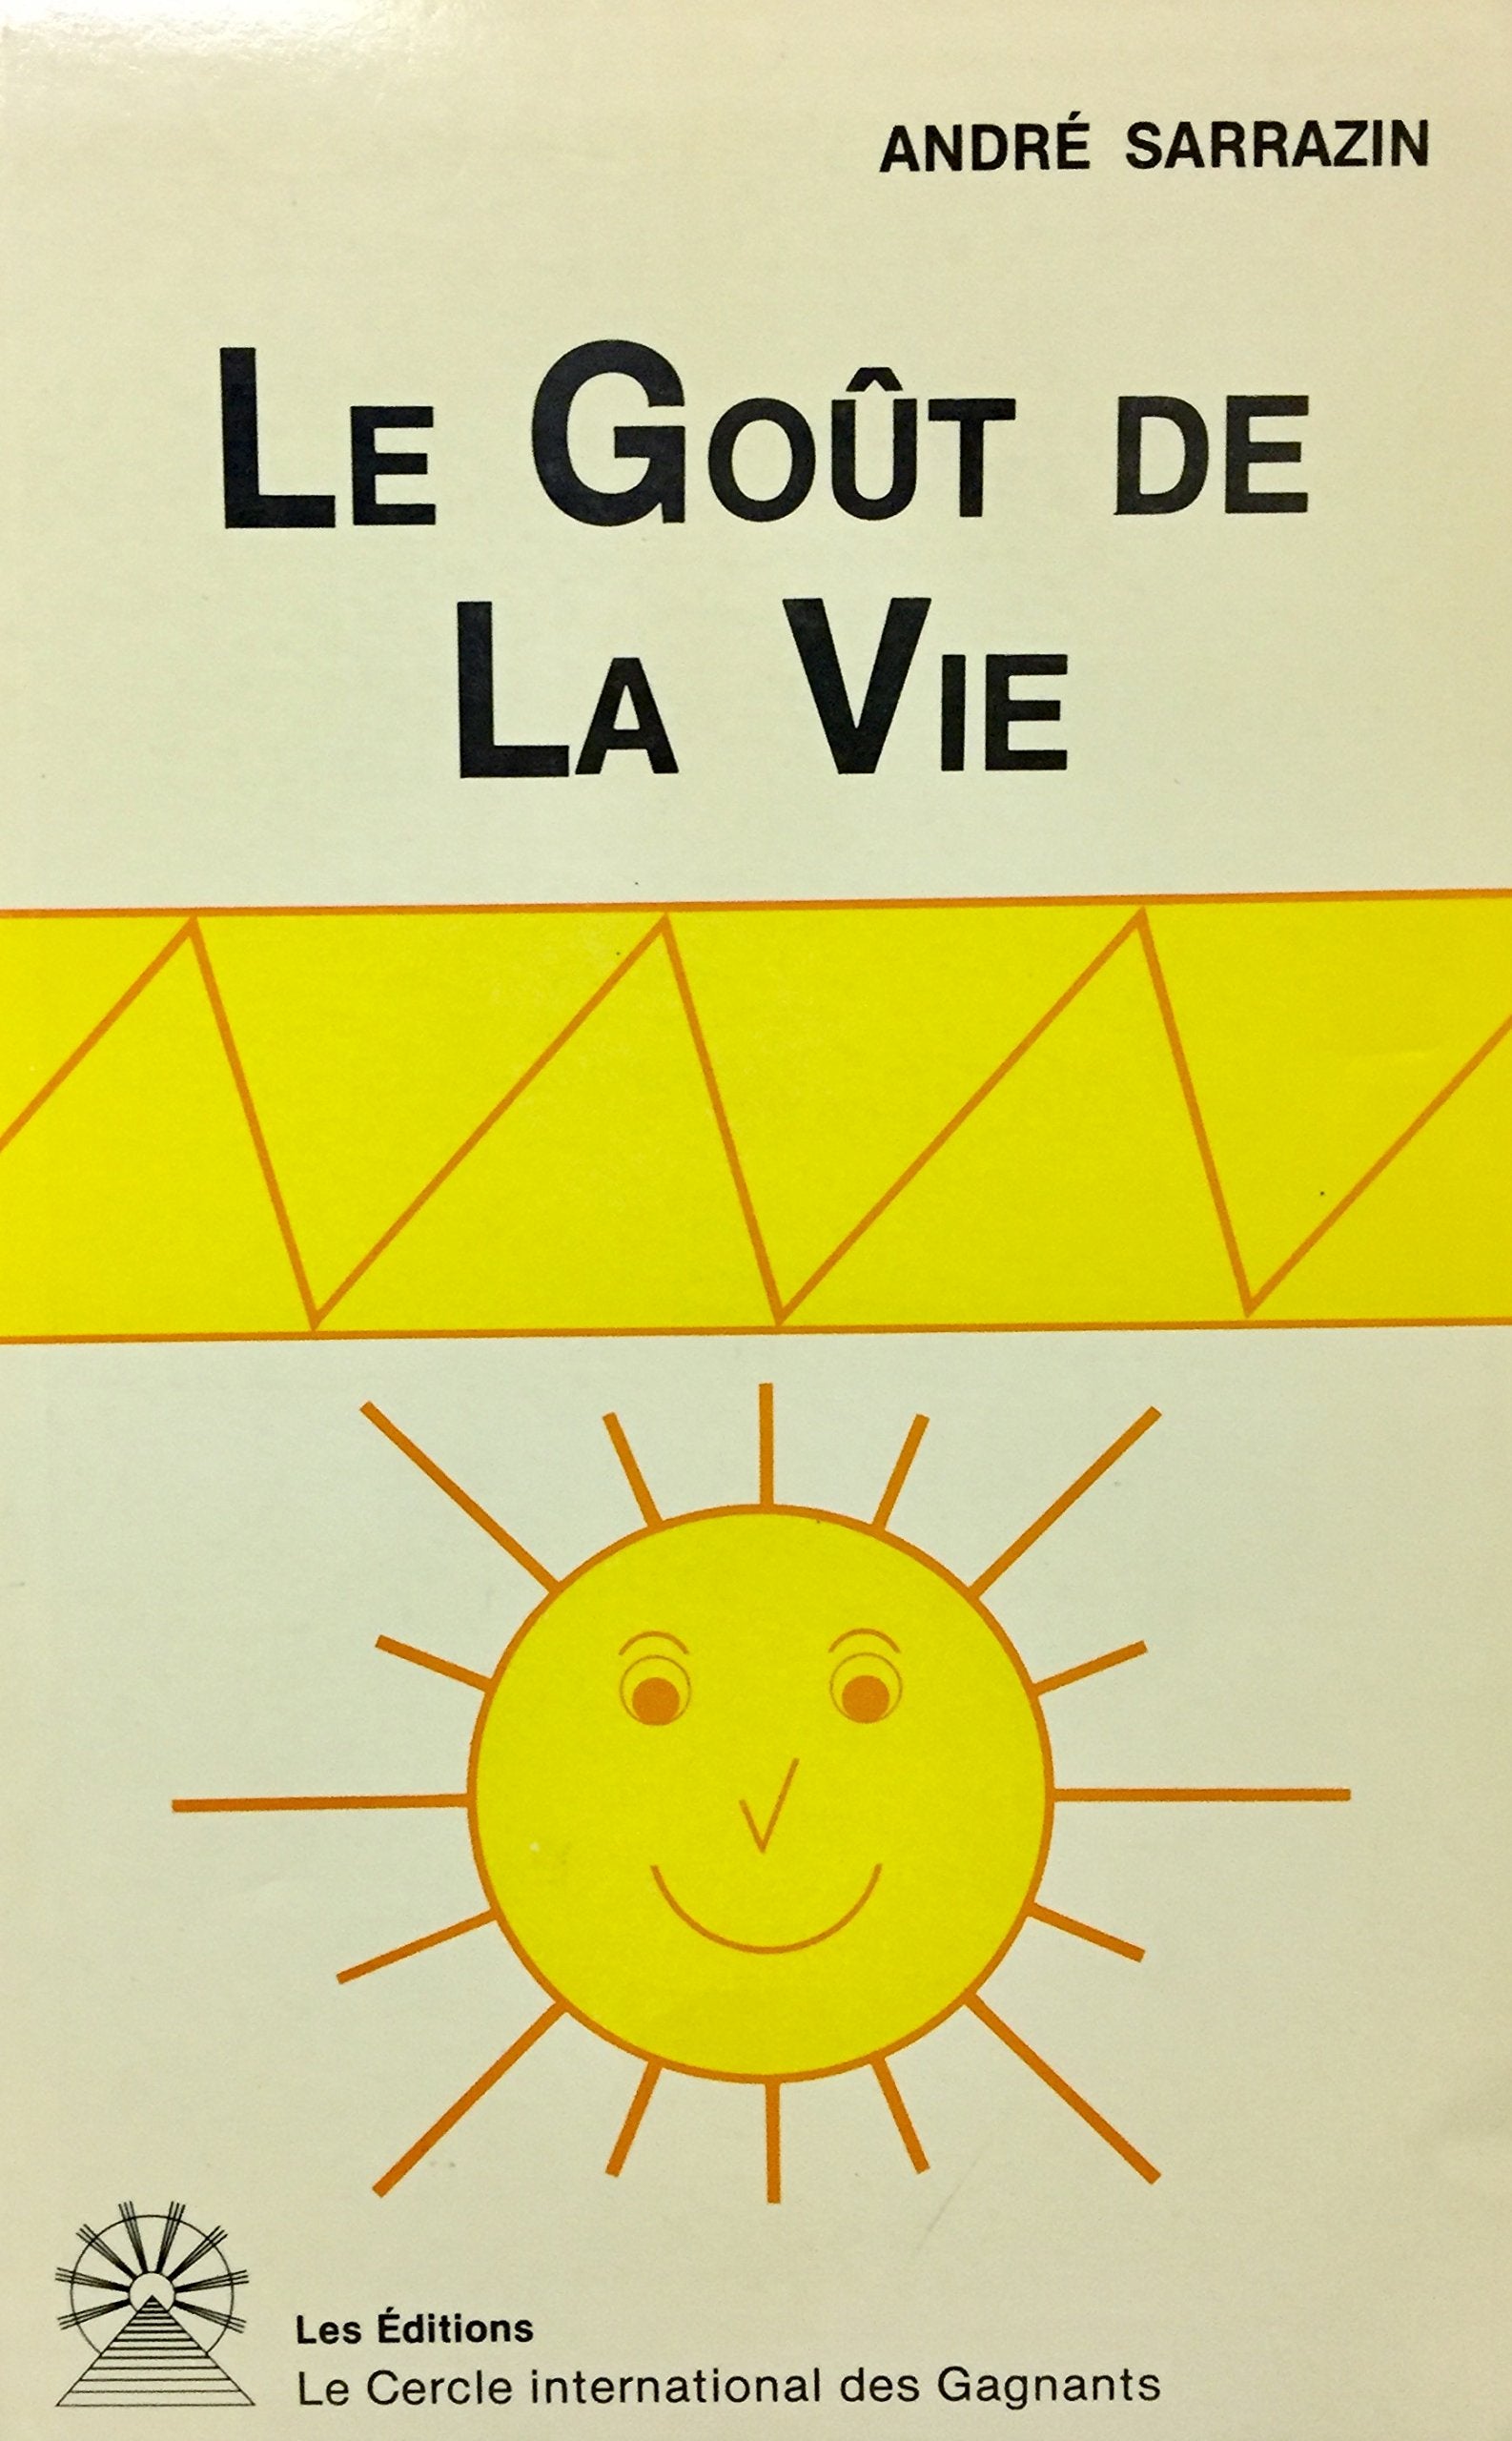 Livre ISBN 289323996X Le goût de la vie (André Sarrazin)